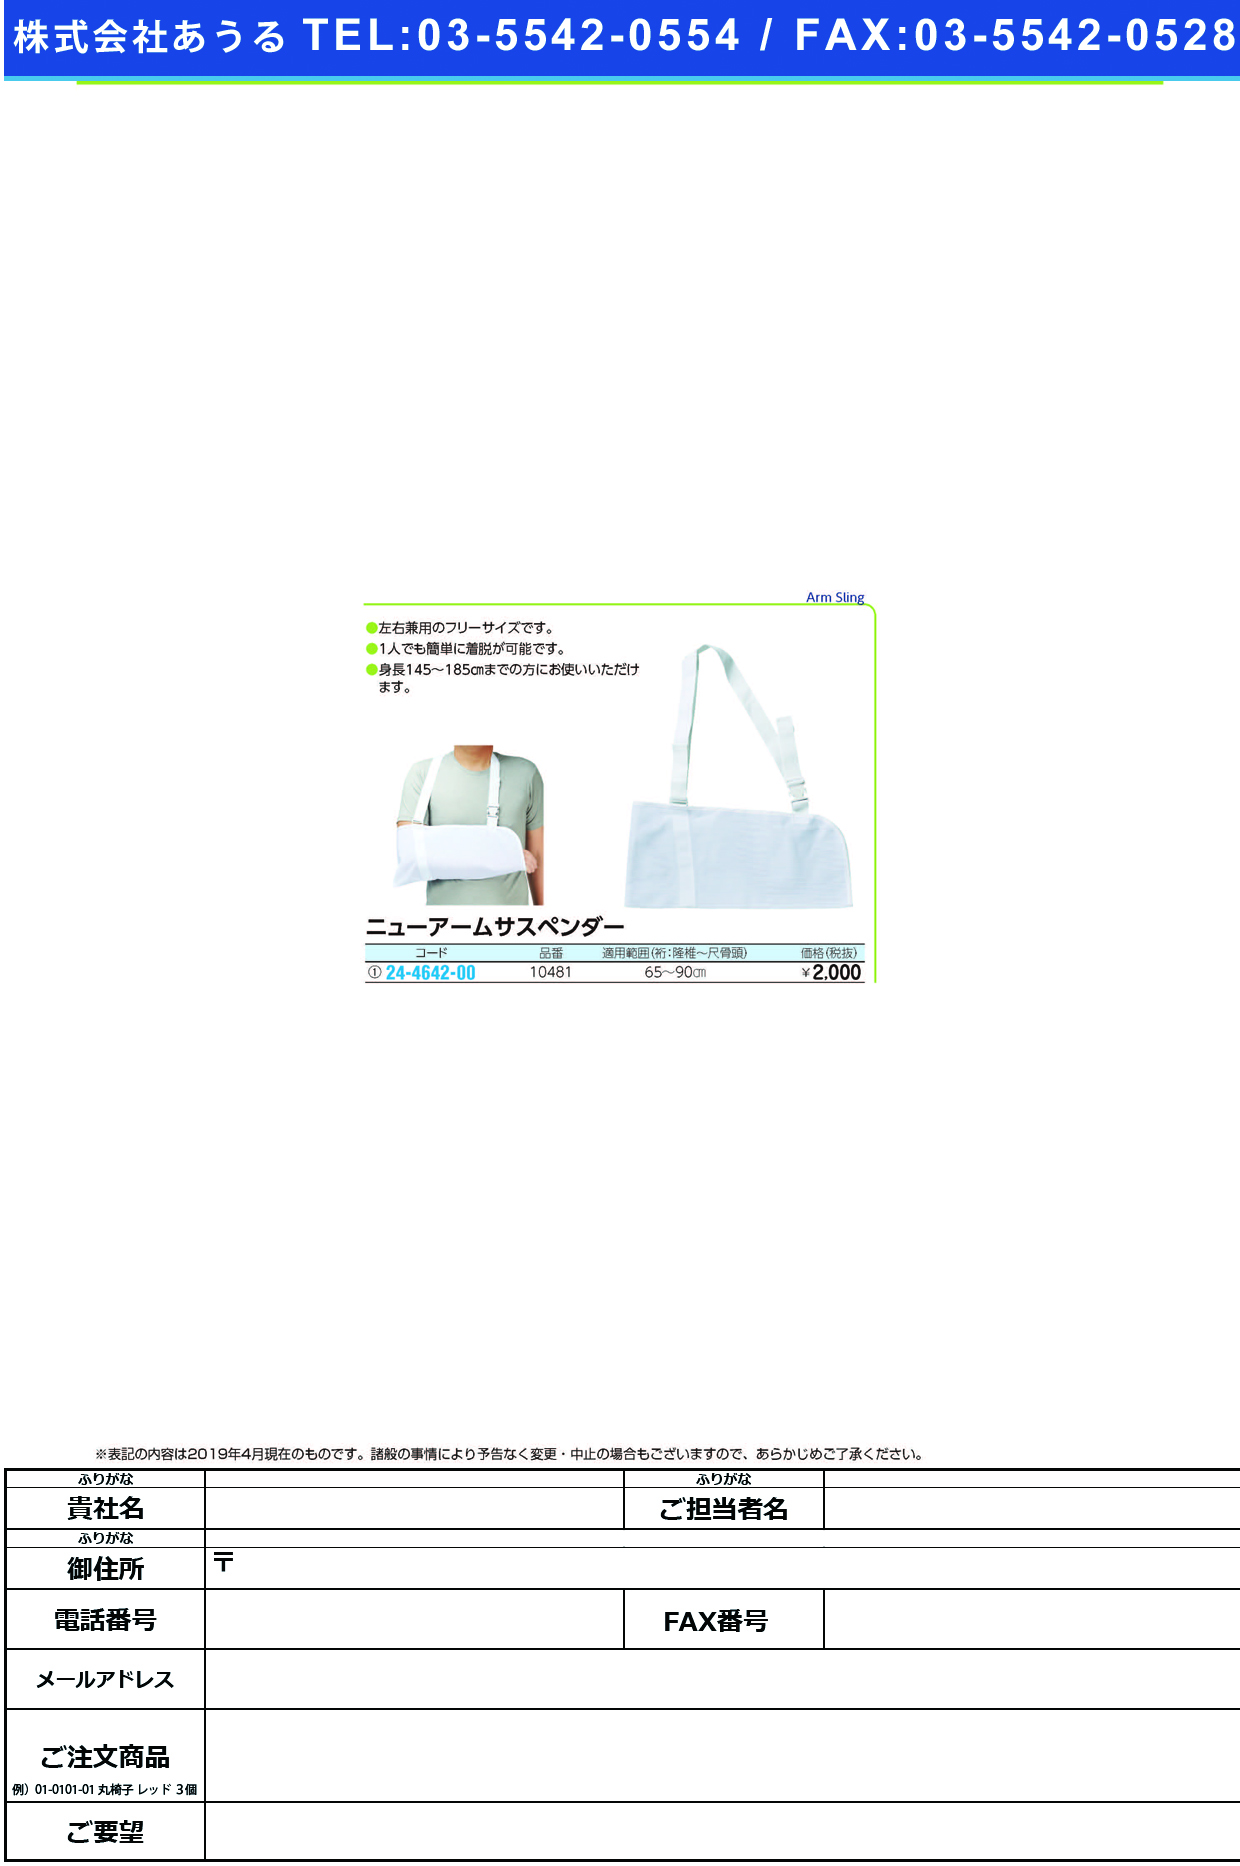 (24-4642-00)ニューアームサスペンダー 10481(1ｺｲﾘ) ﾆｭｰｱｰﾑｻｽﾍﾟﾝﾀﾞｰ(アルケア)【1箱単位】【2019年カタログ商品】